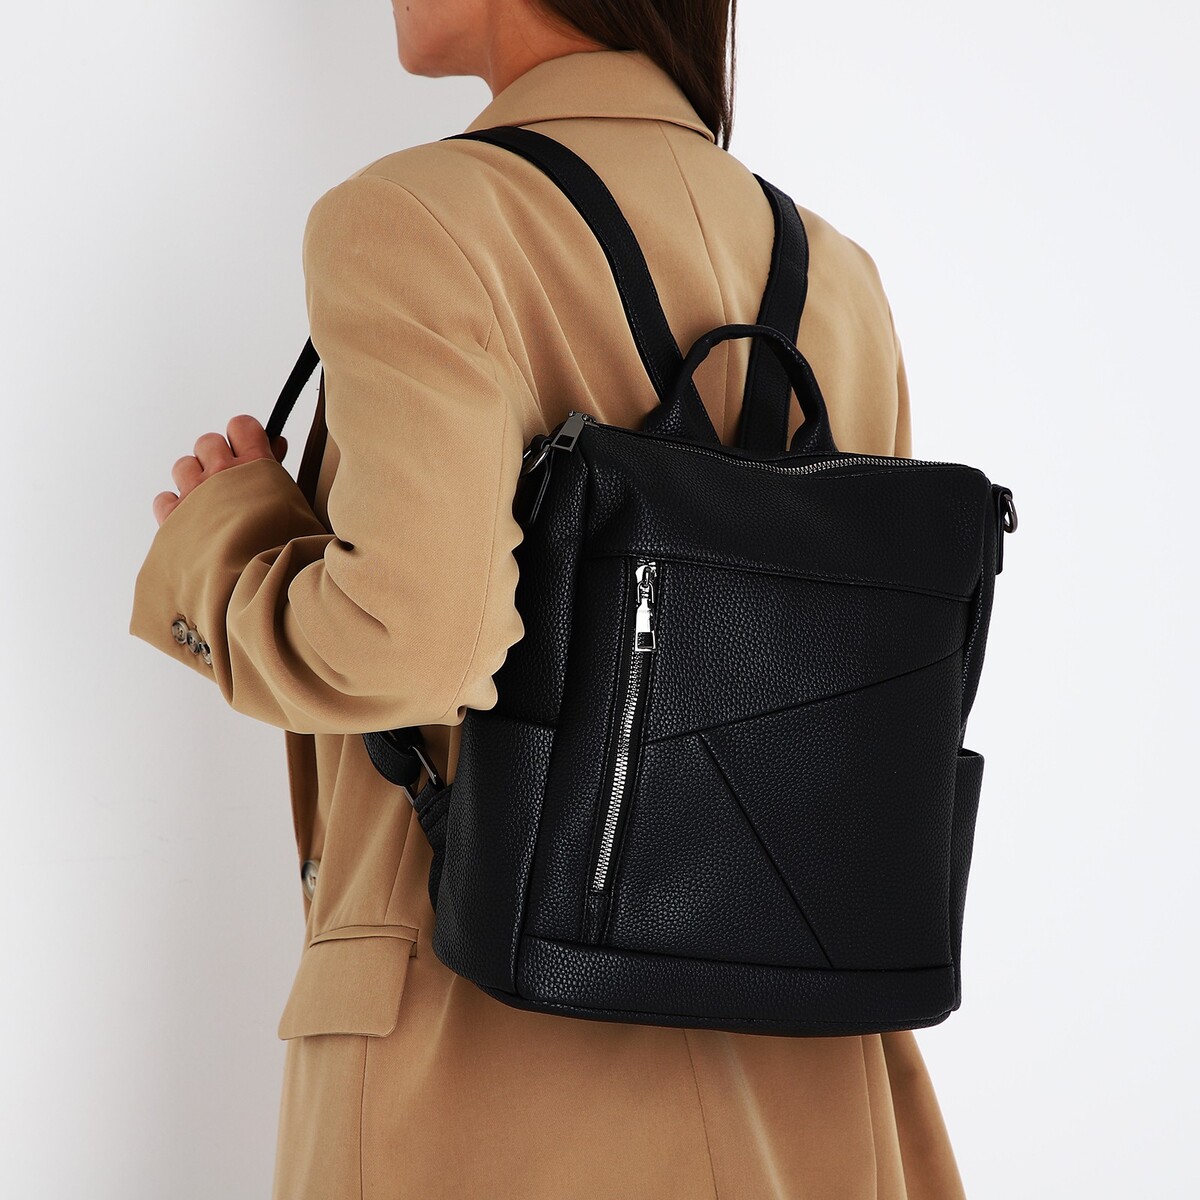 Рюкзак женский из искусственной кожи на молнии, 4 кармана, цвет черный рюкзак женский из искусственной кожи на молнии 4 кармана сумка